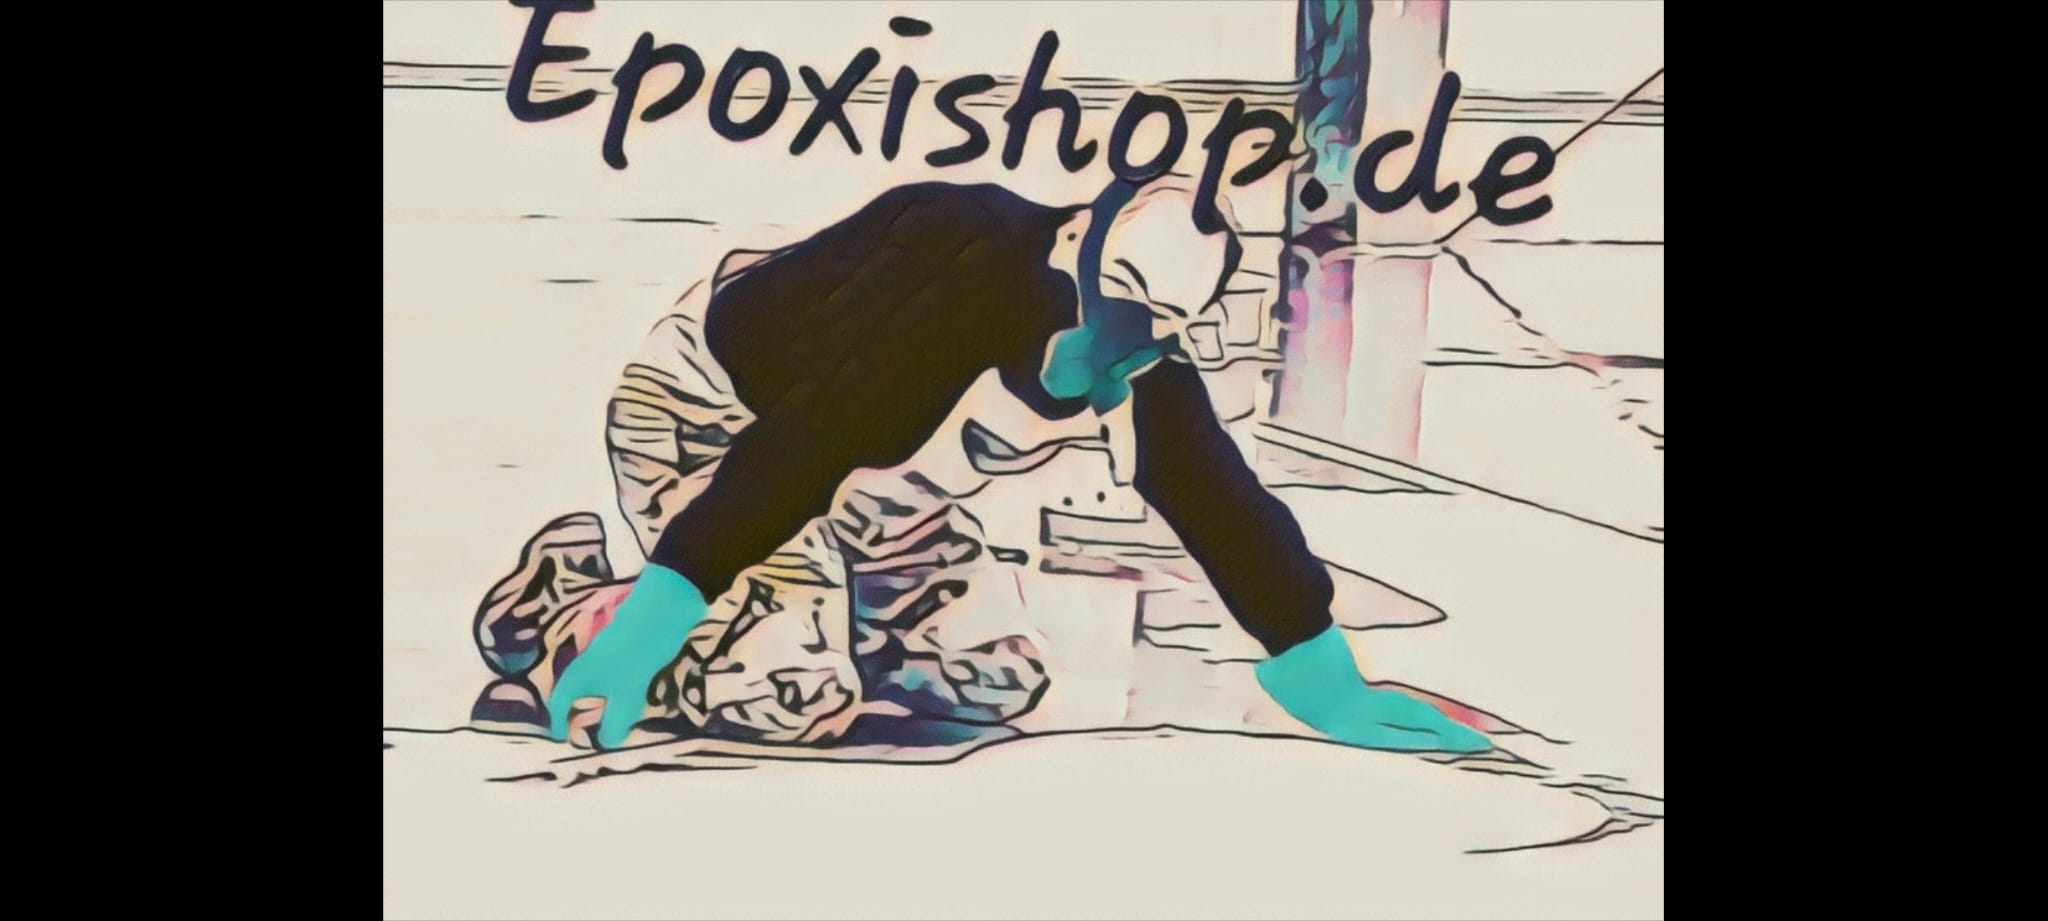 epoxishop.de